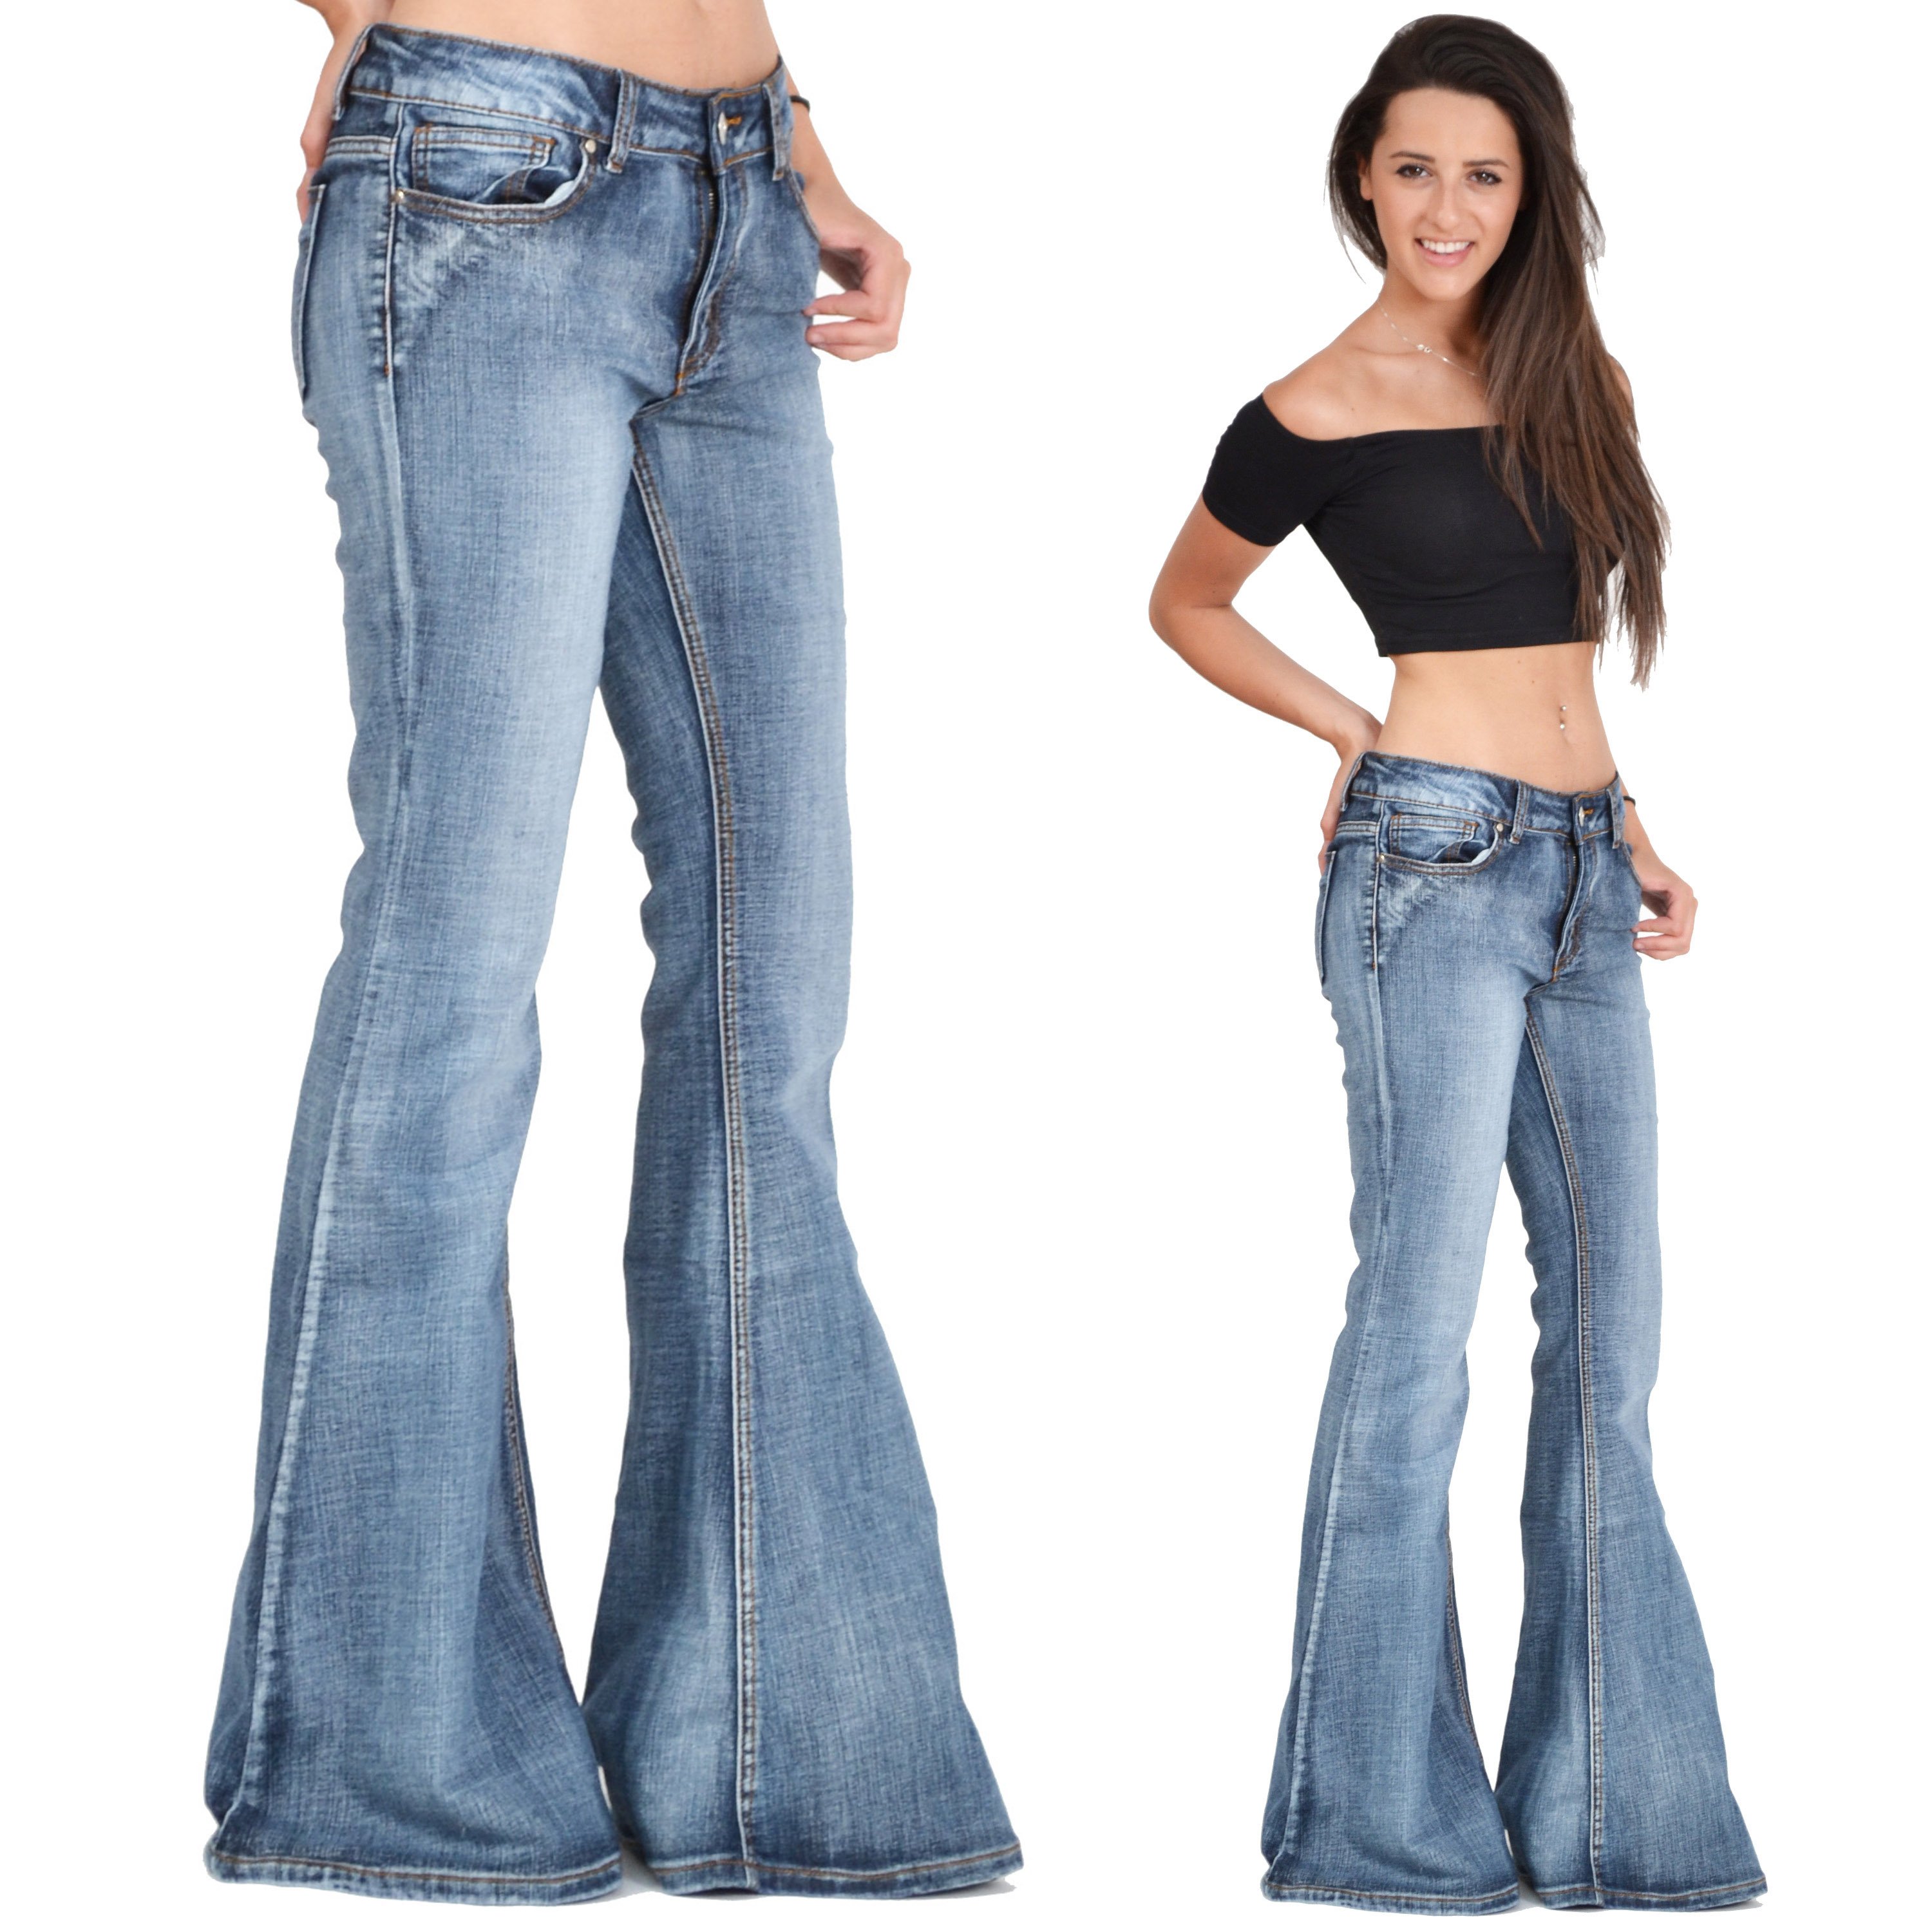 Широкие джинсы модели. Джинсы Flare Bootcut. Bell bottom джинсы. Wide Leg джинсы Корея 2020. Клеш джинс 2000.